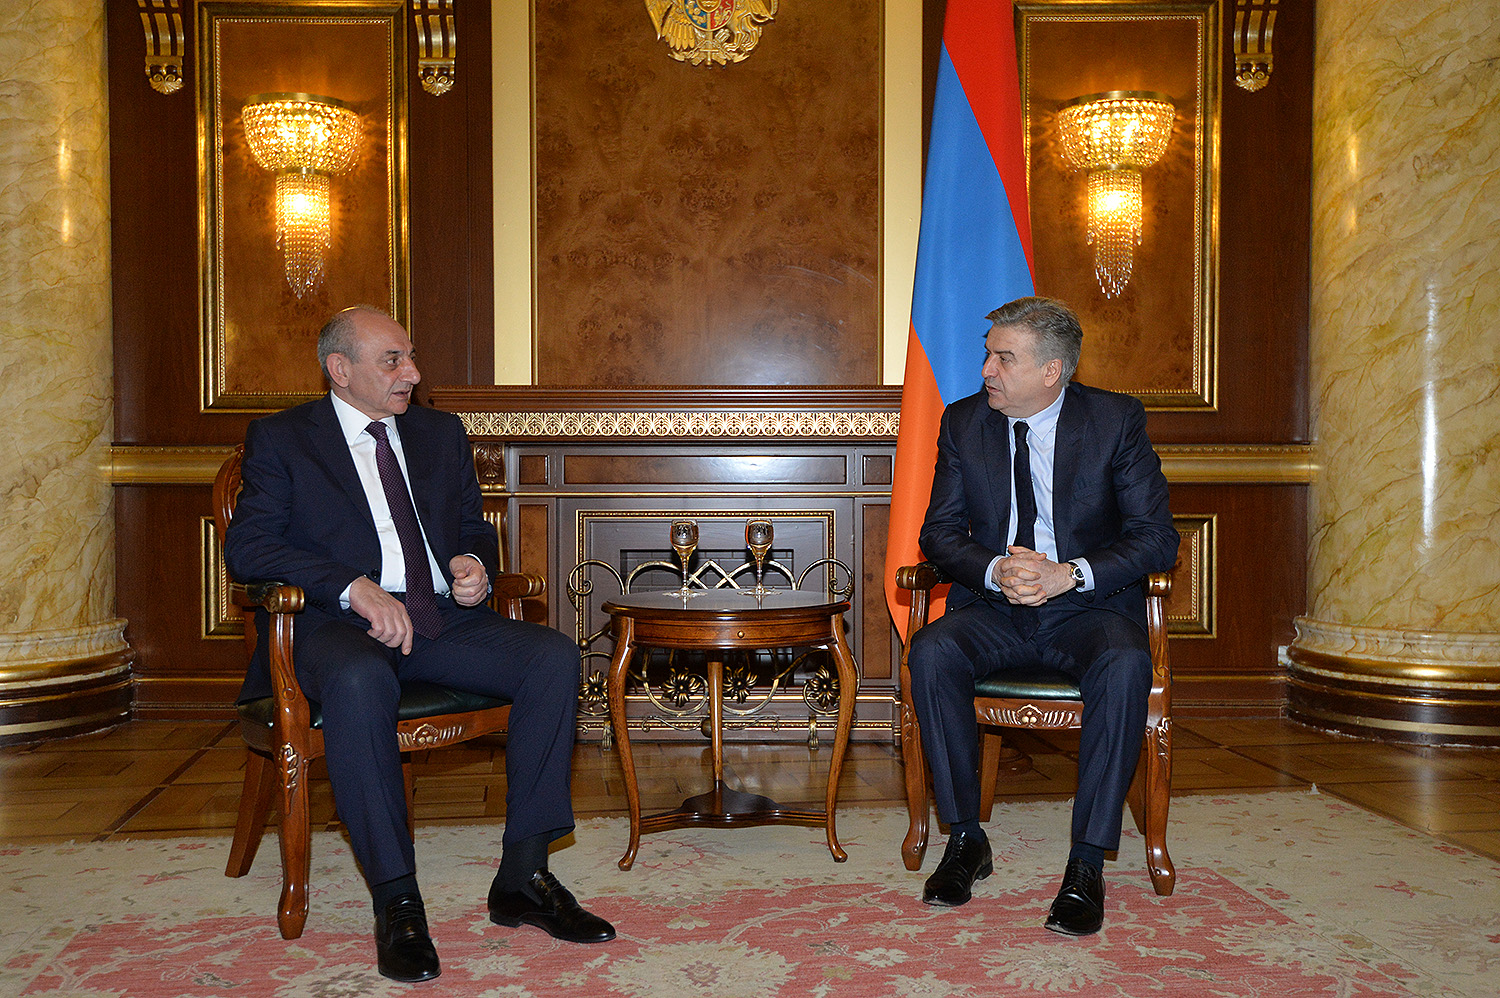 Acting Prime Minister Karen Karapetyan meets with Artsakh Republic President Bako Sahakyan